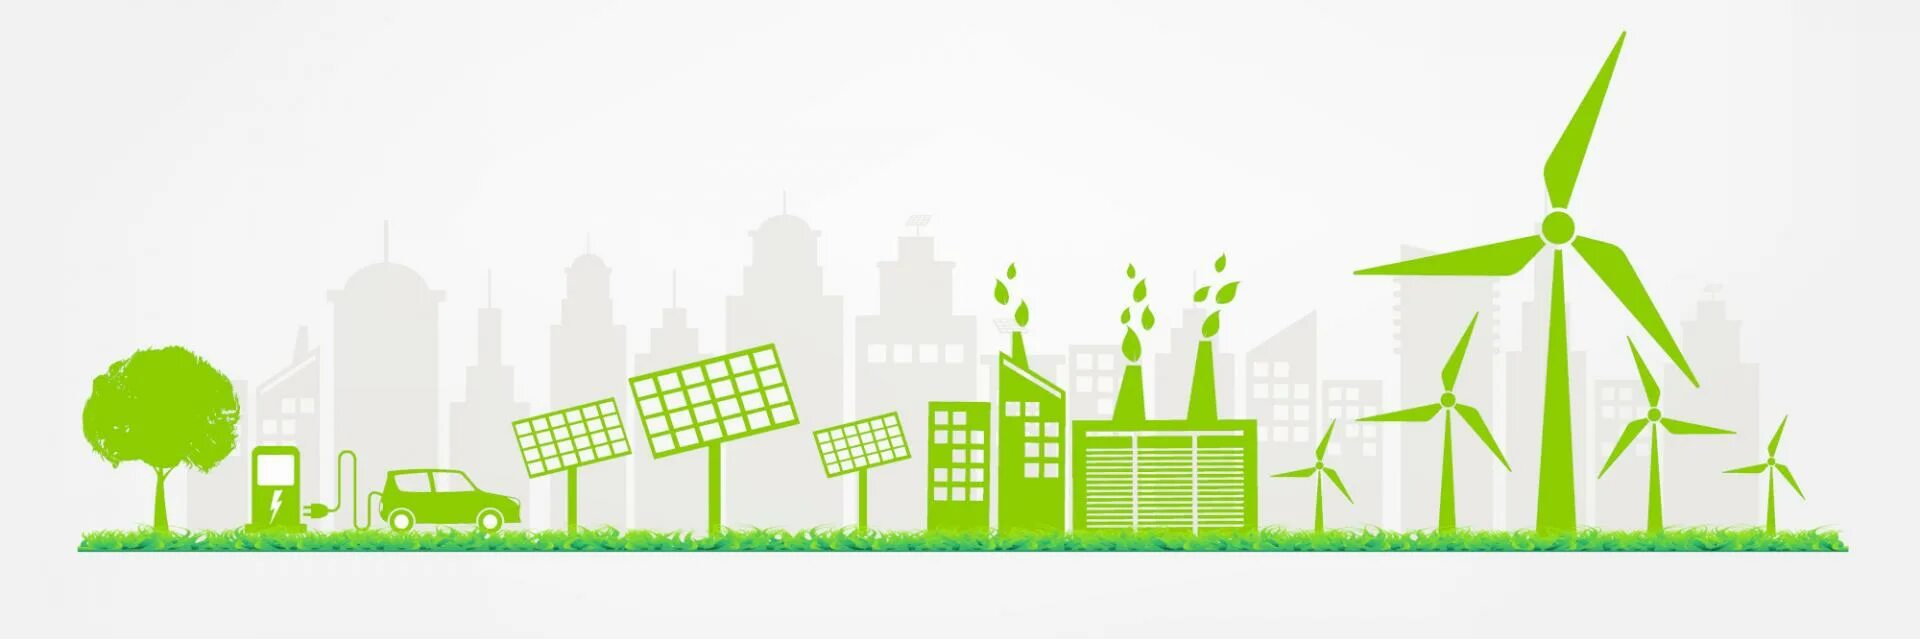 Устойчивое развитие территорий. Зеленая экономика арт. Зеленая экономика и возобновляемые источники энергии. Зеленая экономика и устойчивое развитие.